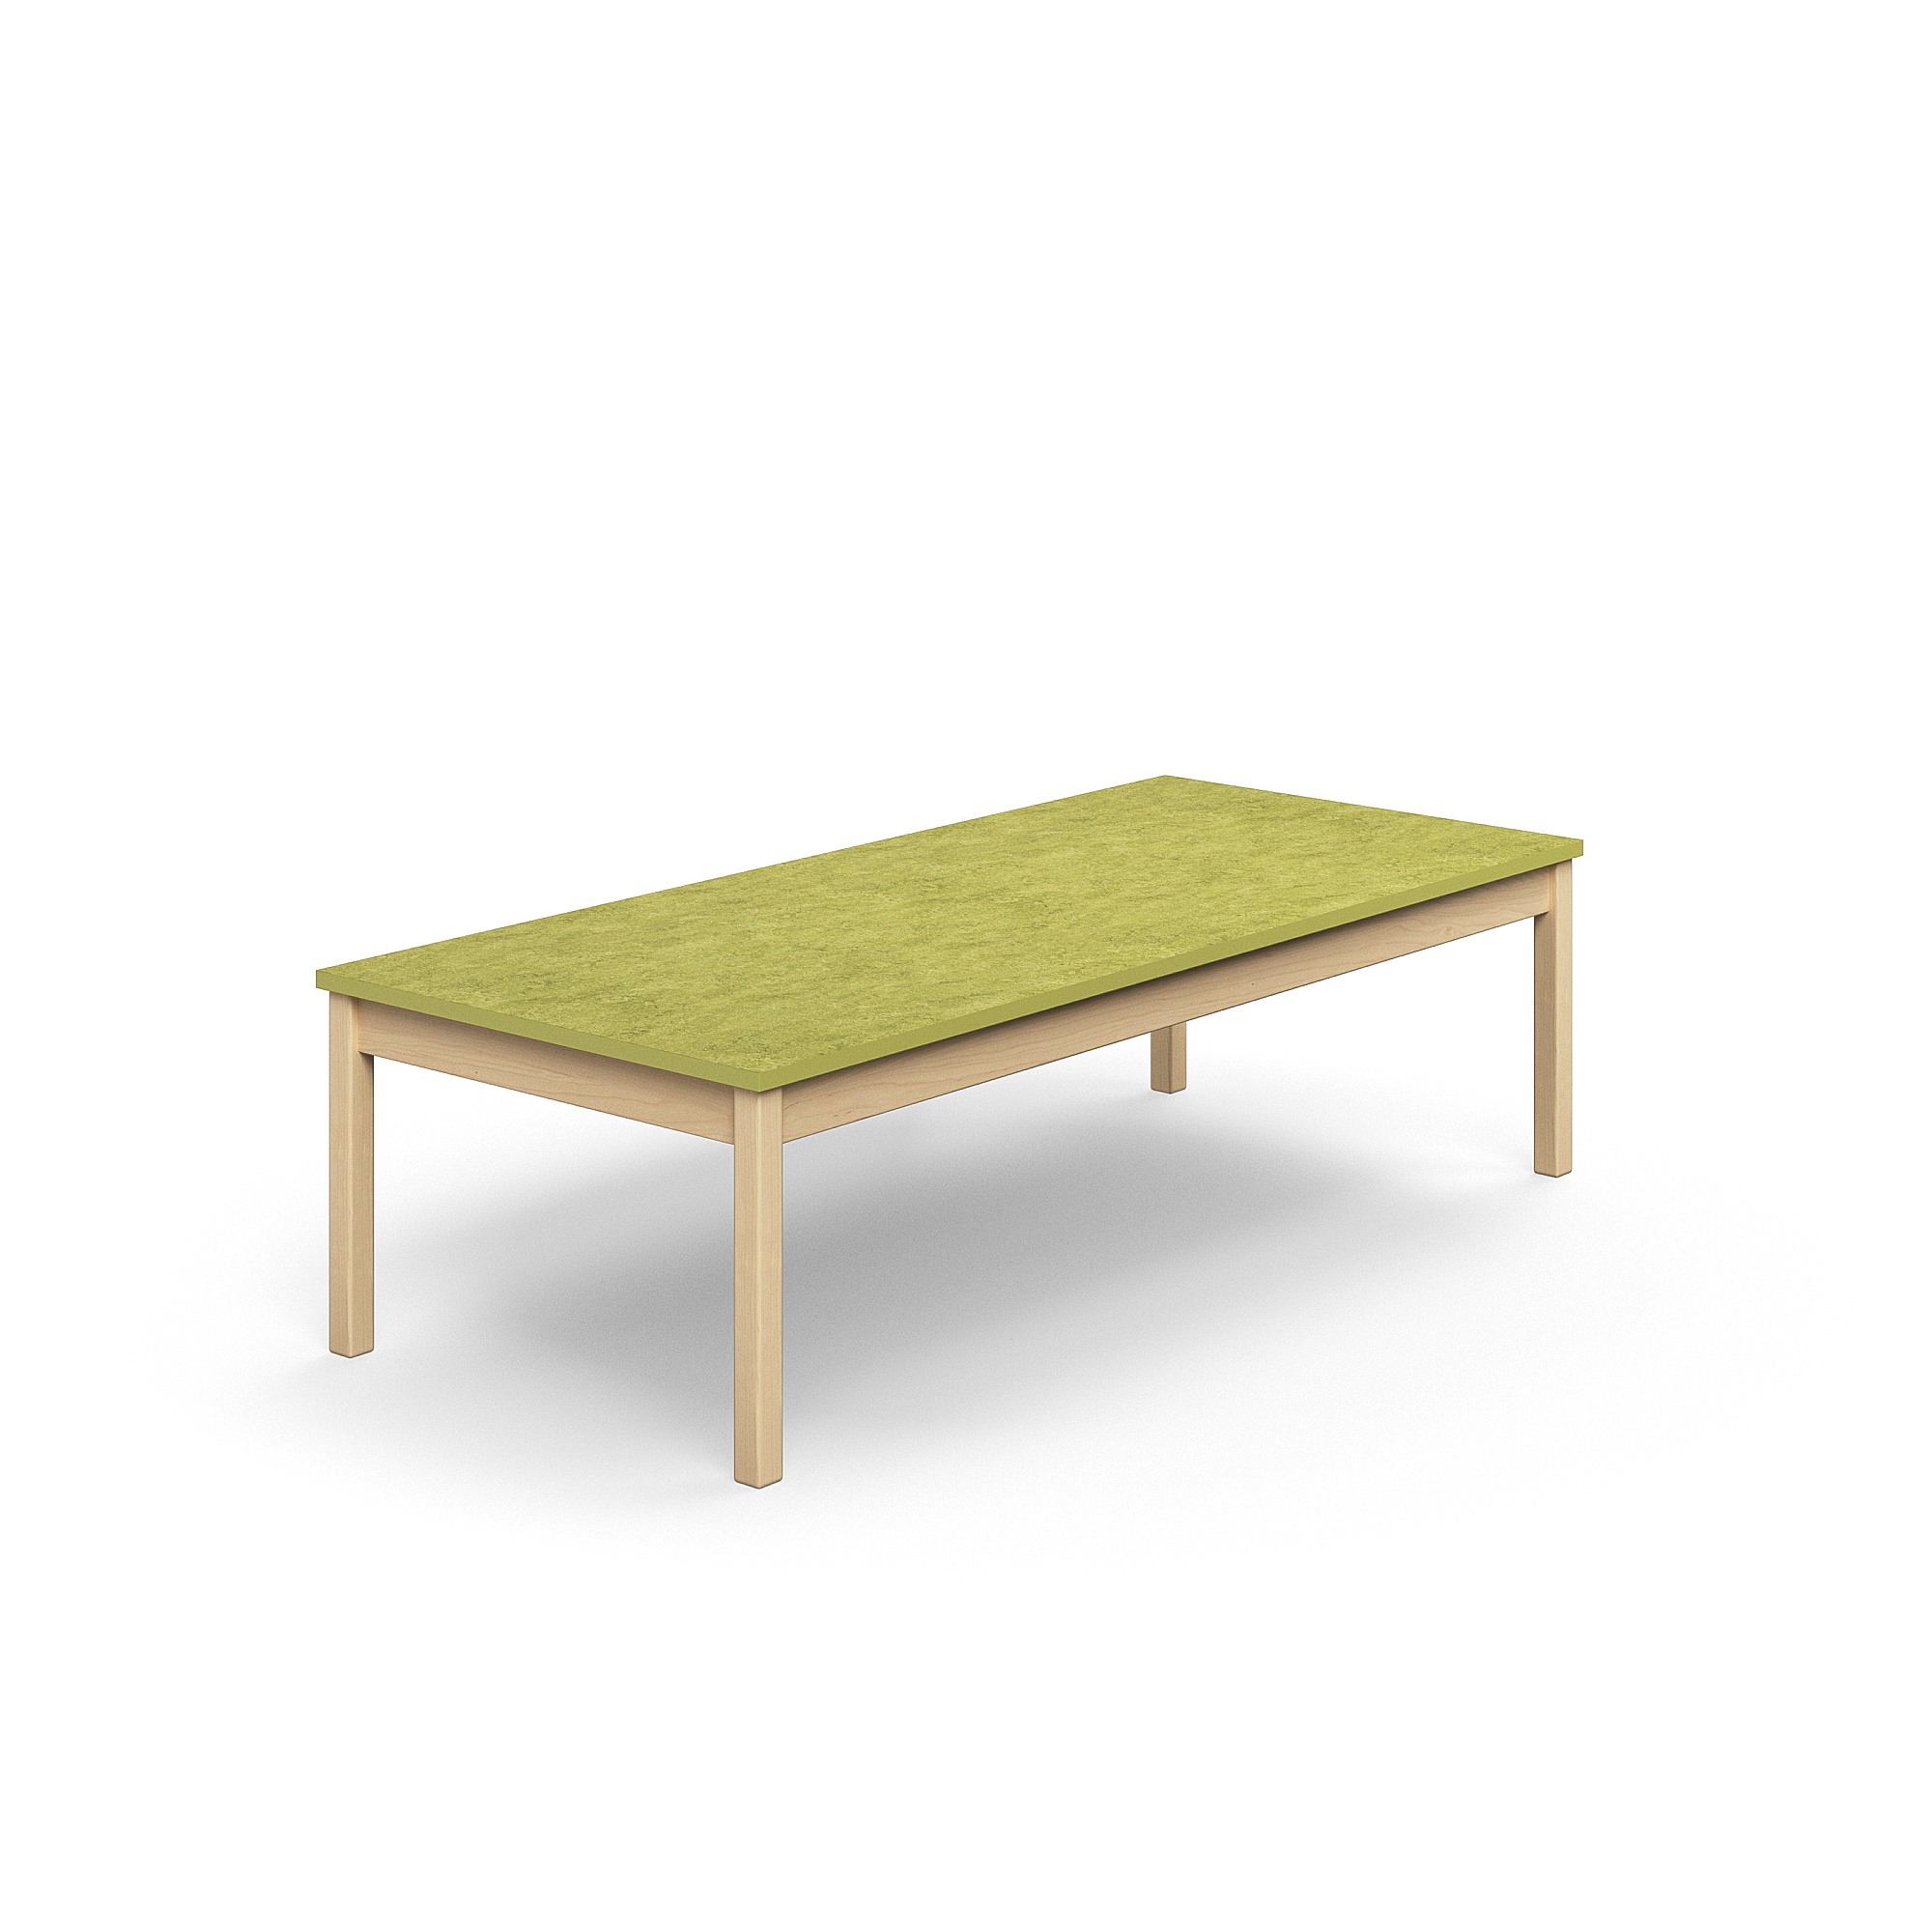 Stůl DECIBEL, 1800x800x530 mm, akustické linoleum, bříza/limetkově zelená